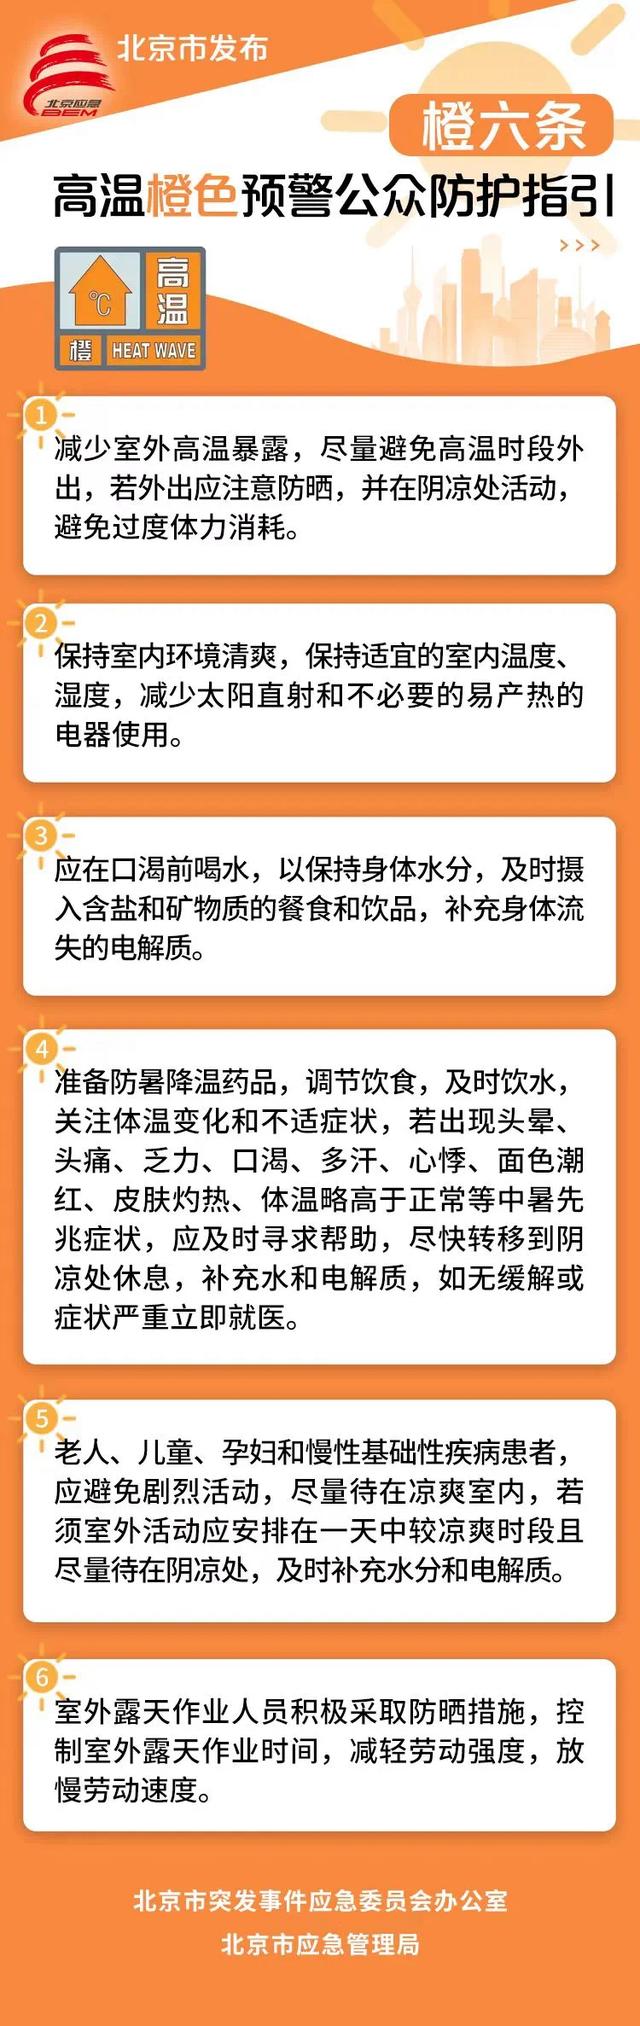 最高气温可达37℃以上 北京发布高温橙色预警